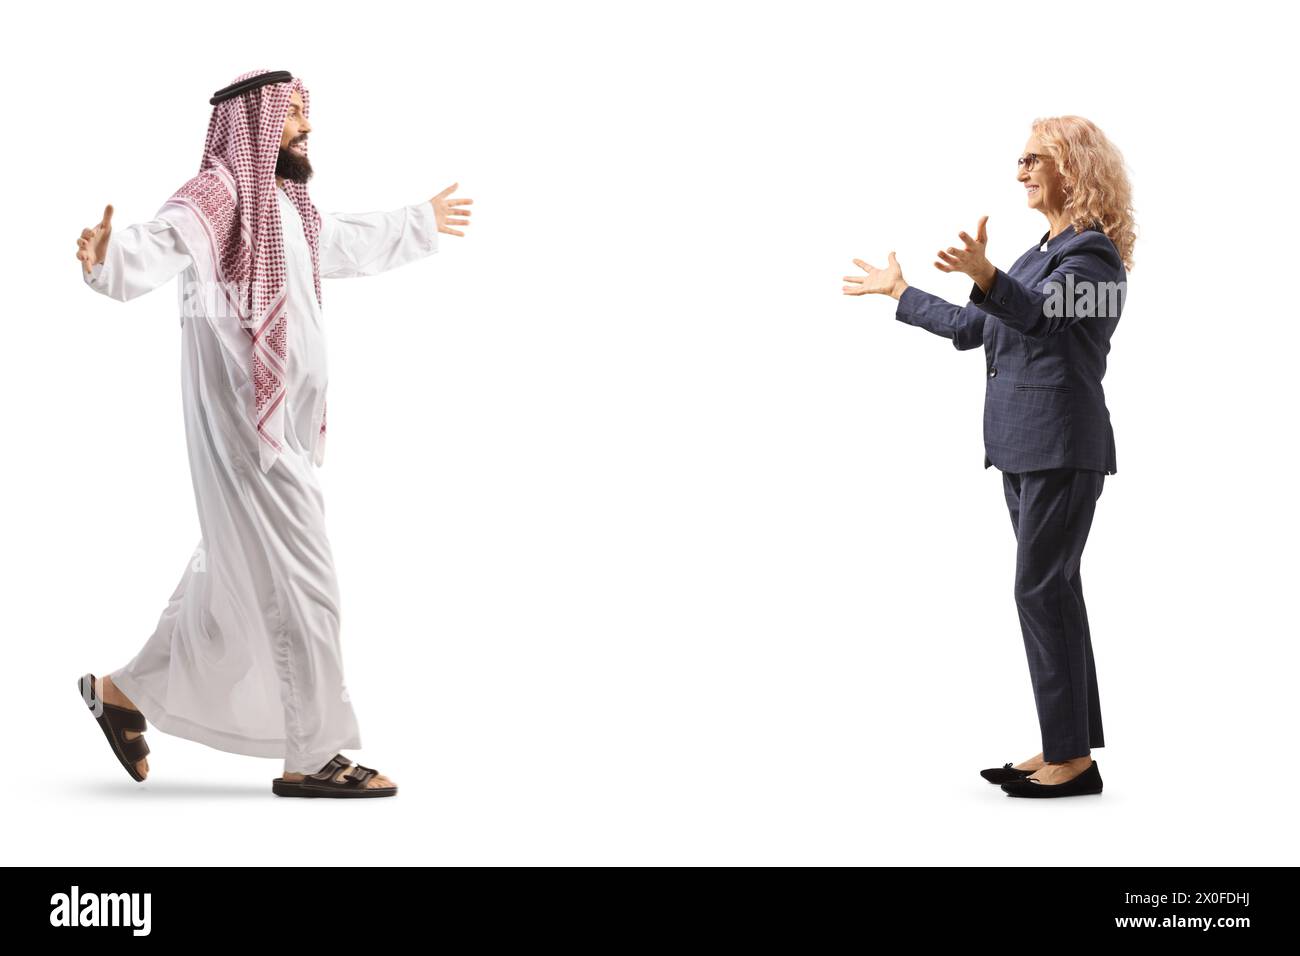 Plan de profil complet d'un homme arabe saoudien rencontrant une femme isolée sur fond blanc Banque D'Images